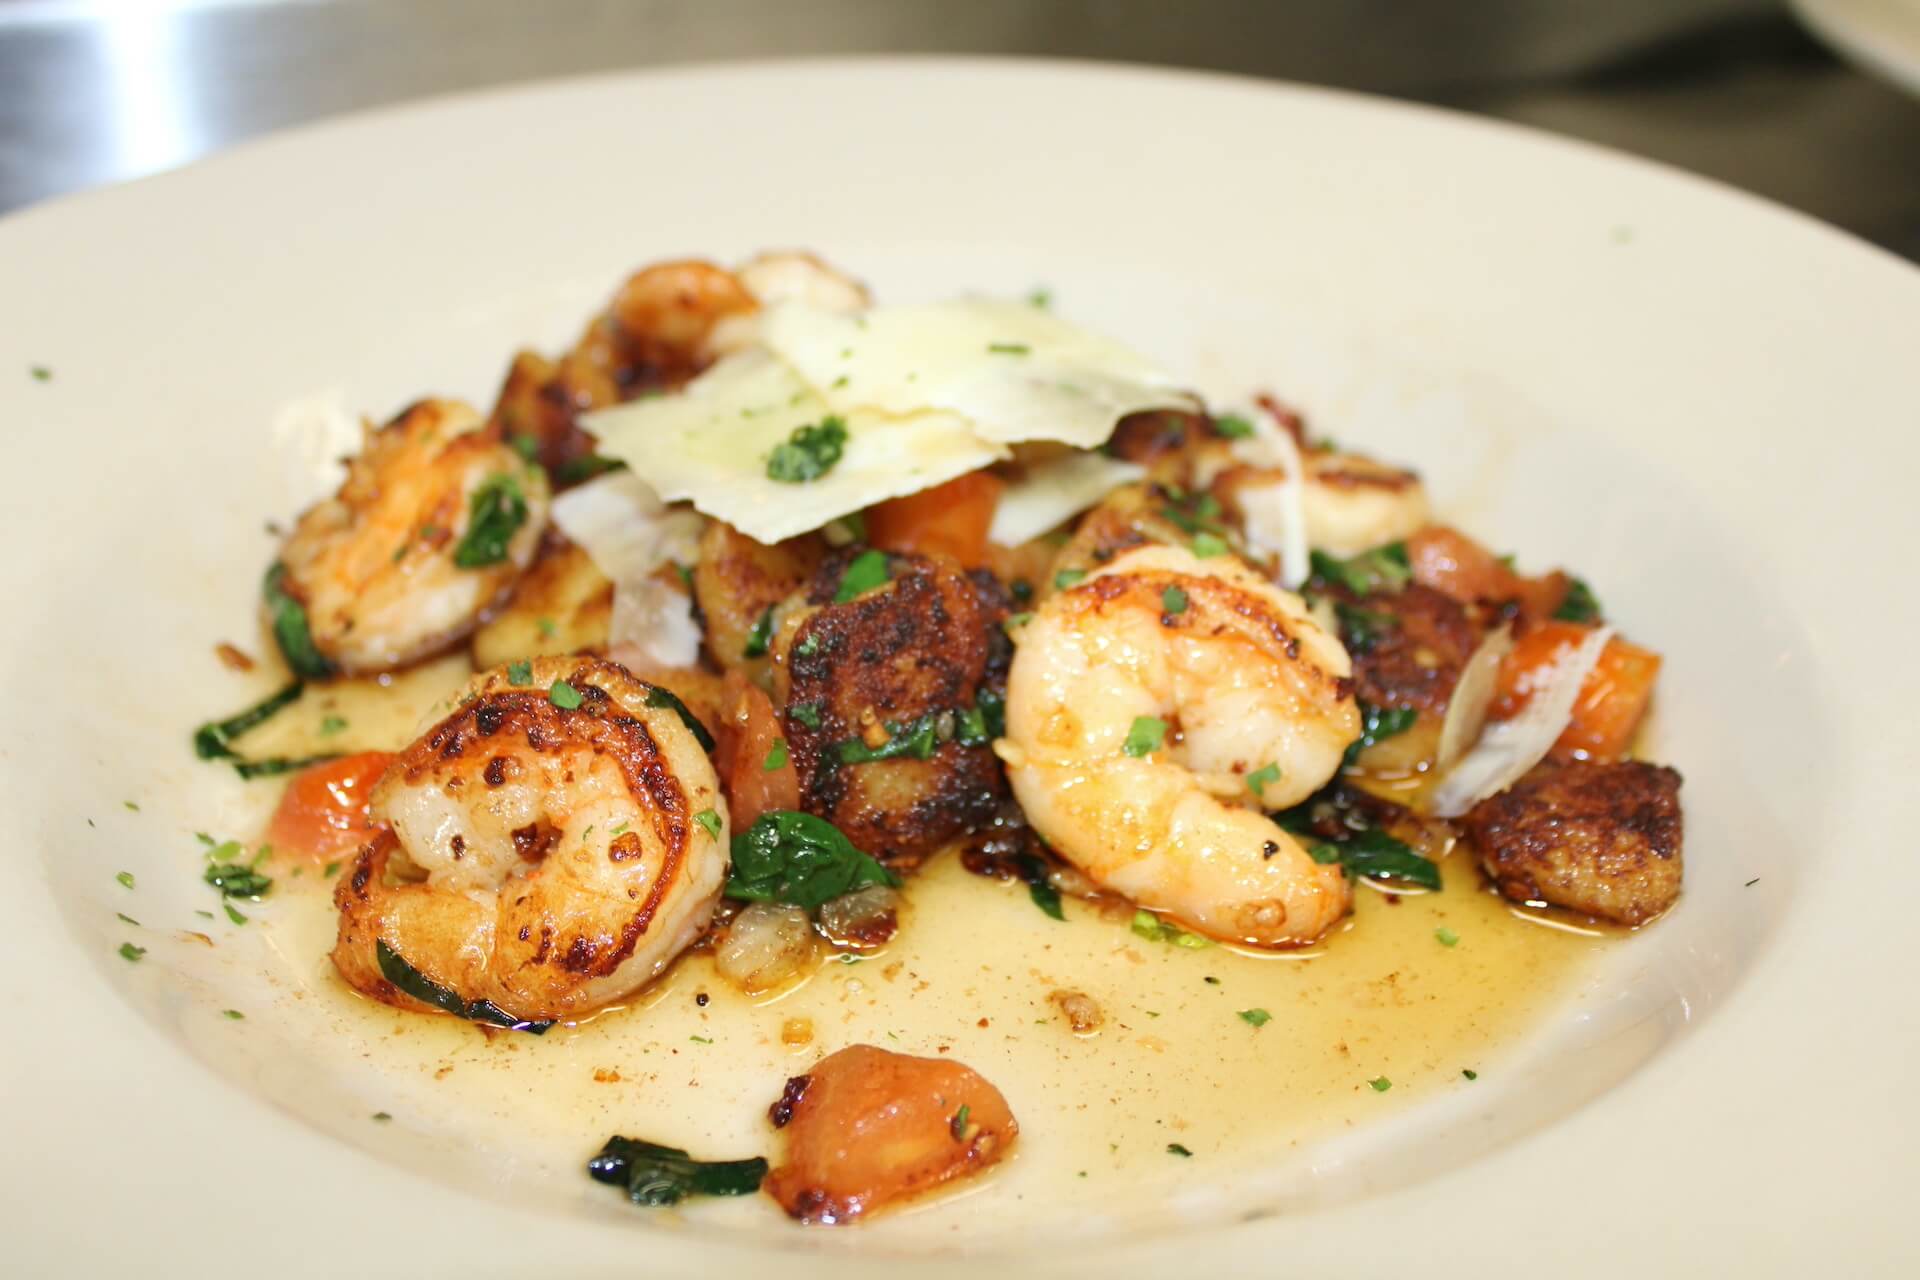 shrimp served on plate